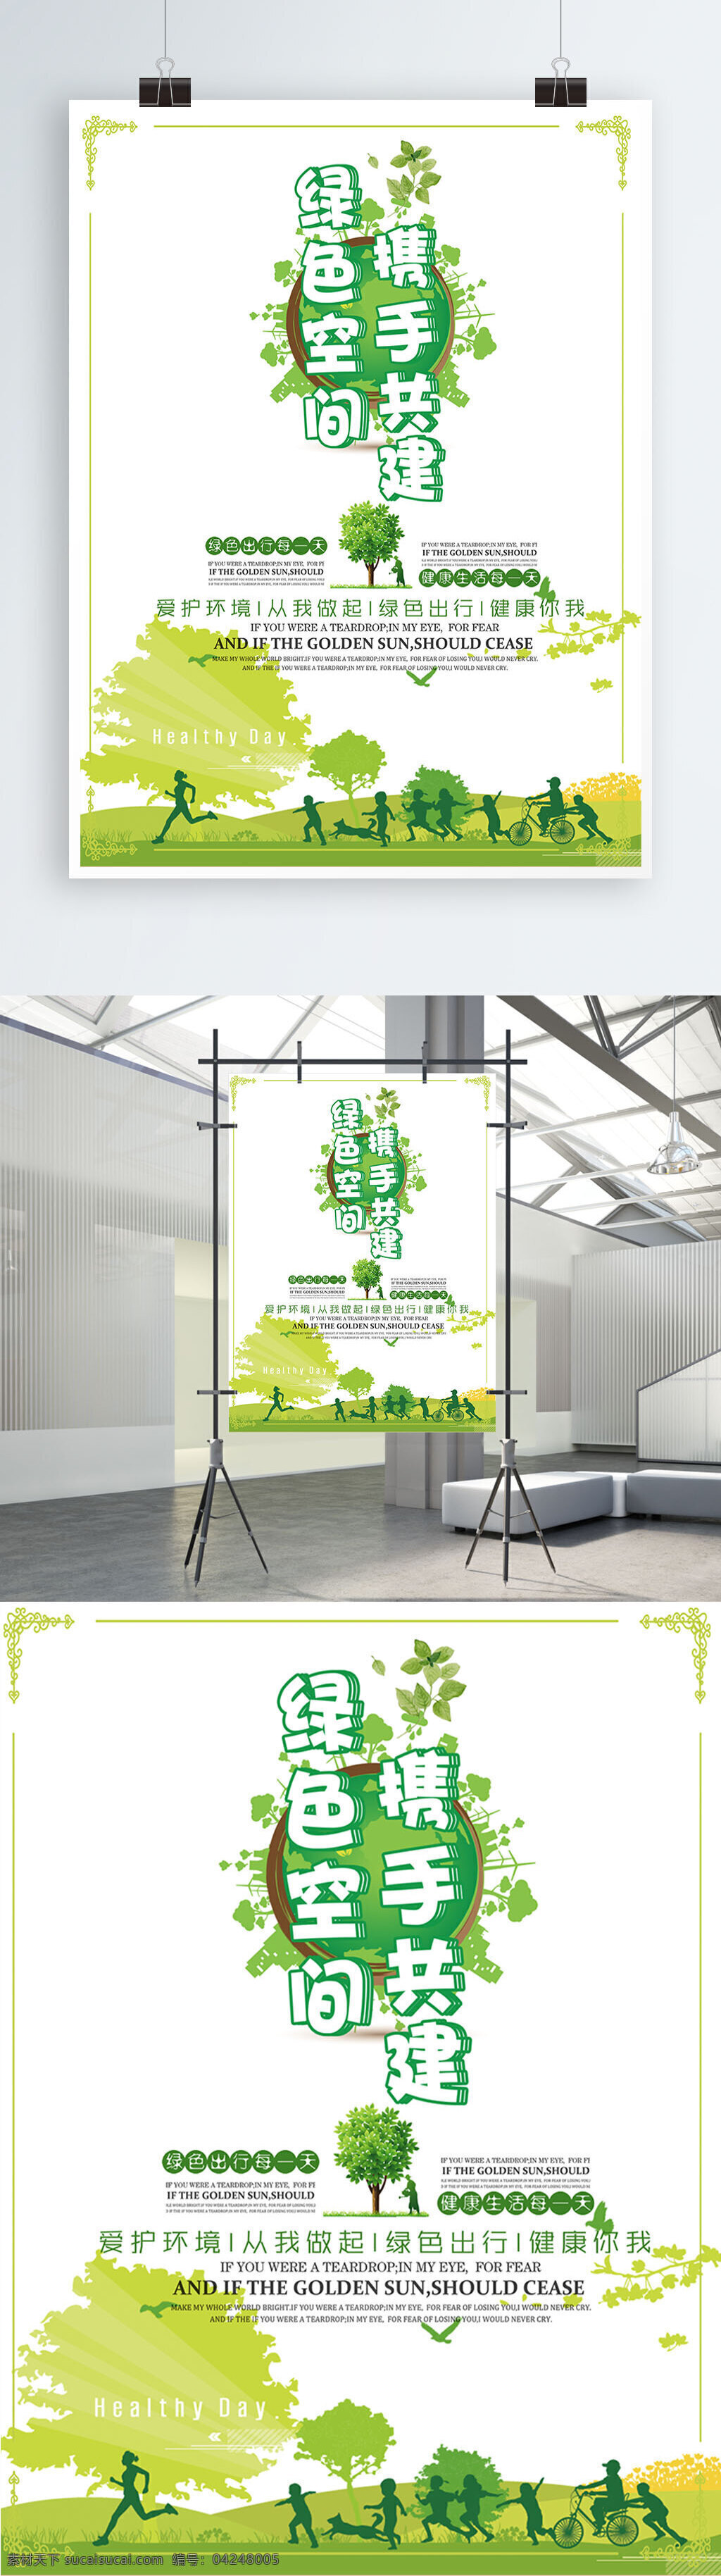 绿色 空间 携手 共建 公益 海报 保护环境 创意 地球 呼吁环保 环保 绿色空间 携手共建 宣传